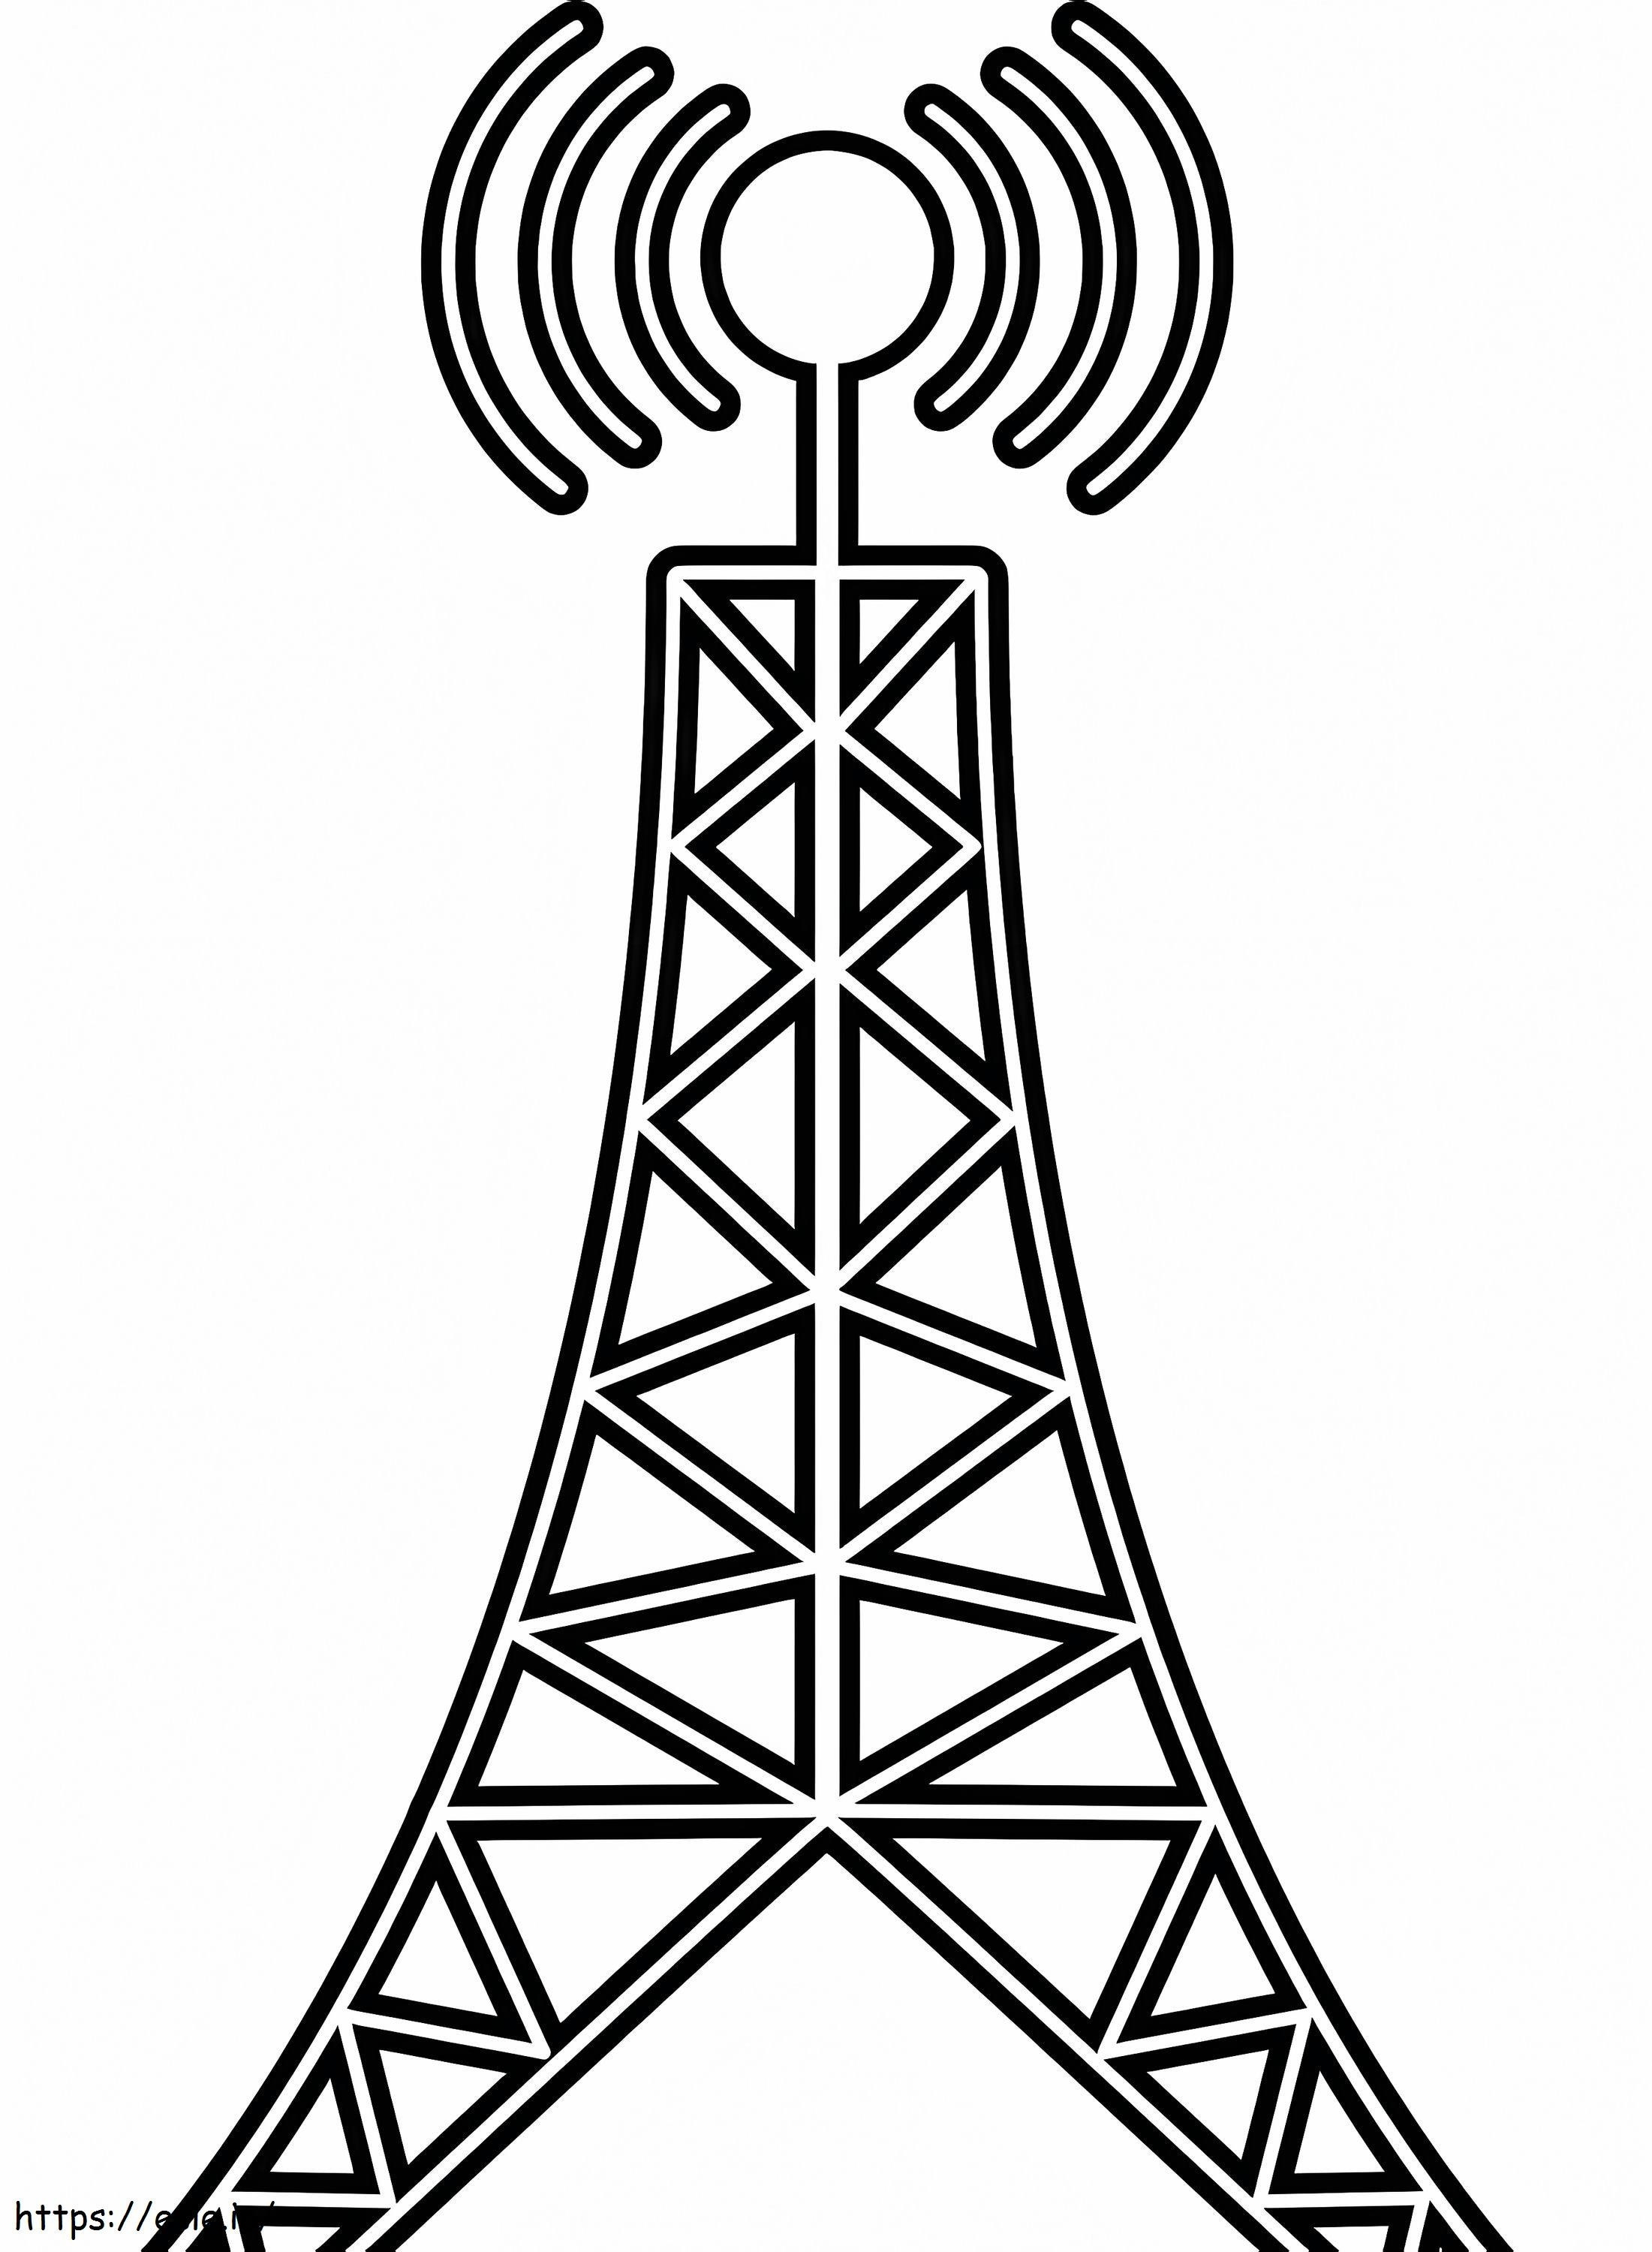 Torre dell'antenna da colorare